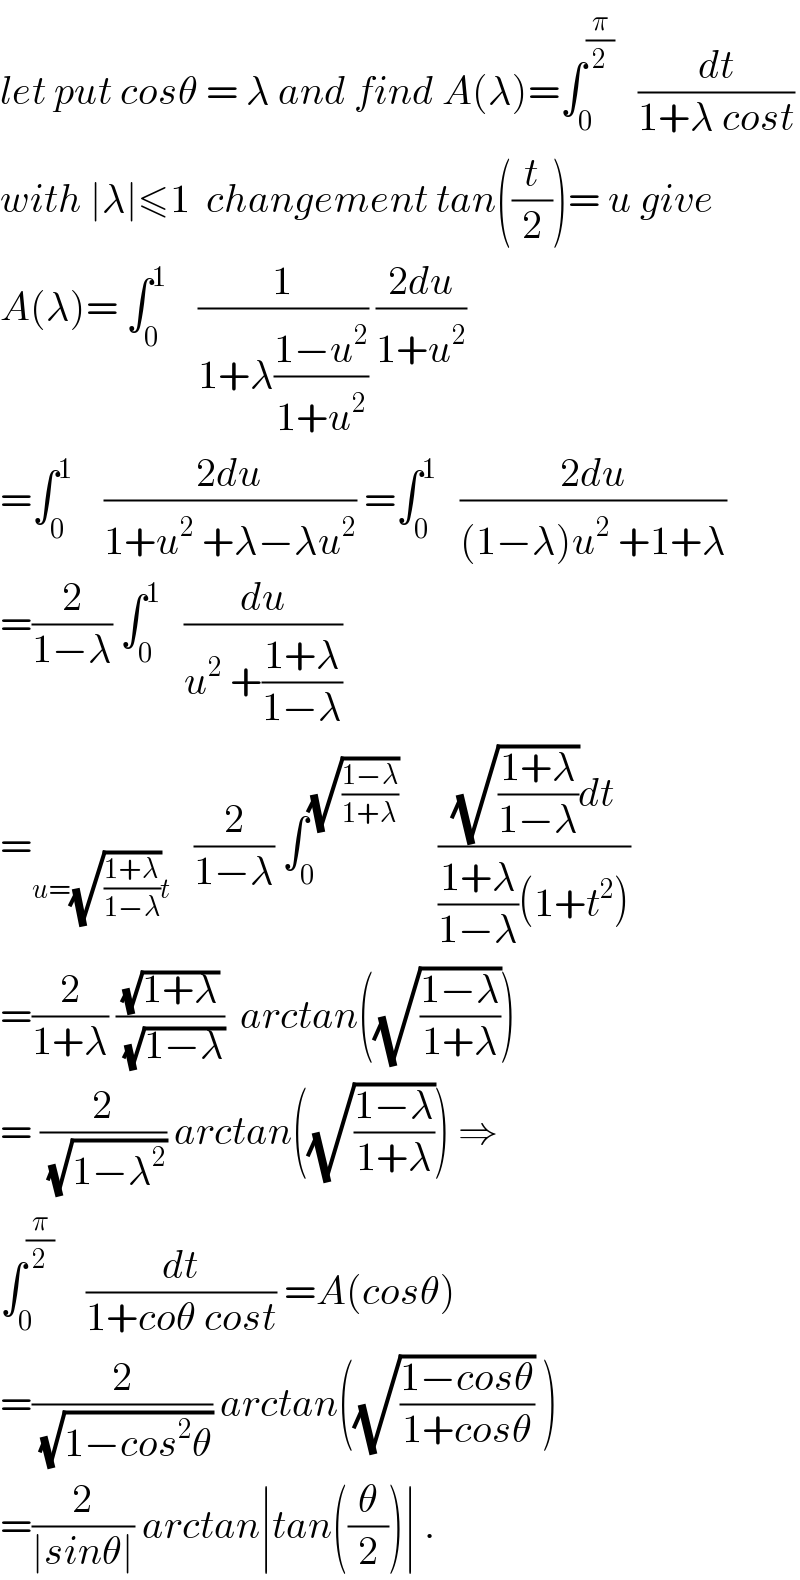 let put cosθ = λ and find A(λ)=∫_0 ^(π/2)    (dt/(1+λ cost))  with ∣λ∣≤1  changement tan((t/2))= u give  A(λ)= ∫_0 ^1     (1/(1+λ((1−u^2 )/(1+u^2 )))) ((2du)/(1+u^2 ))  =∫_0 ^1     ((2du)/(1+u^2  +λ−λu^2 )) =∫_0 ^1    ((2du)/((1−λ)u^2  +1+λ))  =(2/(1−λ)) ∫_0 ^1    (du/(u^2  +((1+λ)/(1−λ))))   =_(u=(√((1+λ)/(1−λ)))t)    (2/(1−λ)) ∫_0 ^(√((1−λ)/(1+λ)))      (((√((1+λ)/(1−λ)))dt)/(((1+λ)/(1−λ))(1+t^2 )))  =(2/(1+λ)) ((√(1+λ))/(√(1−λ)))  arctan((√((1−λ)/(1+λ))))  = (2/(√(1−λ^2 ))) arctan((√((1−λ)/(1+λ)))) ⇒  ∫_0 ^(π/2)     (dt/(1+coθ cost)) =A(cosθ)  =(2/(√(1−cos^2 θ))) arctan((√((1−cosθ)/(1+cosθ))) )  =(2/(∣sinθ∣)) arctan∣tan((θ/2))∣ .  